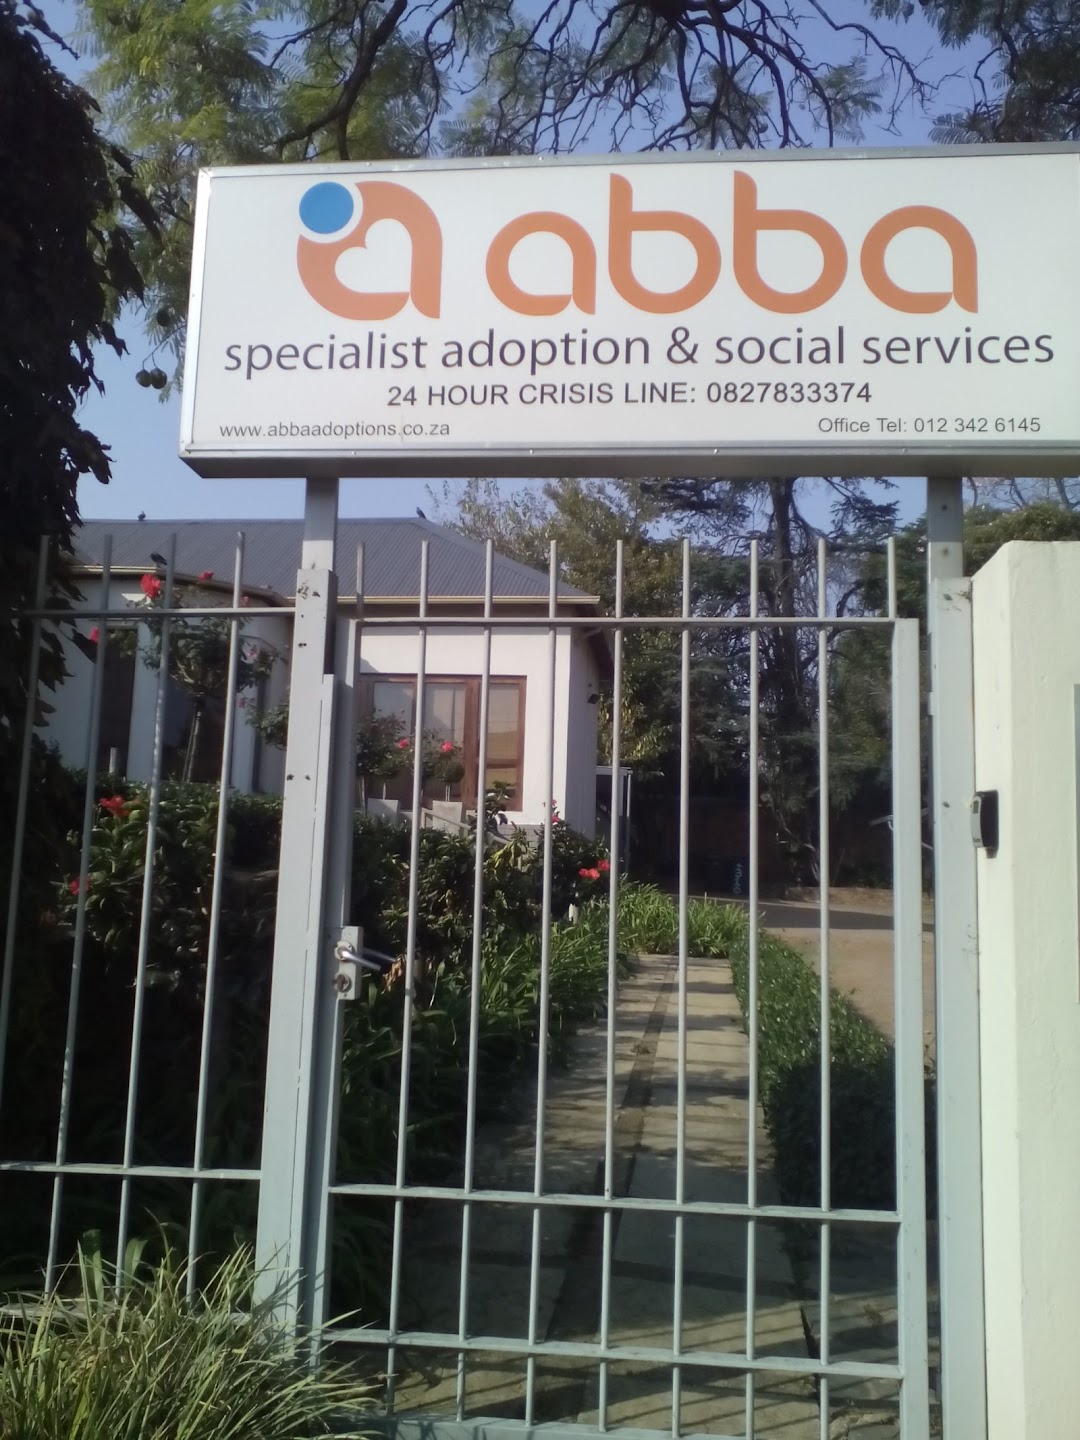 Abba SpecialistAdoption & Social Services